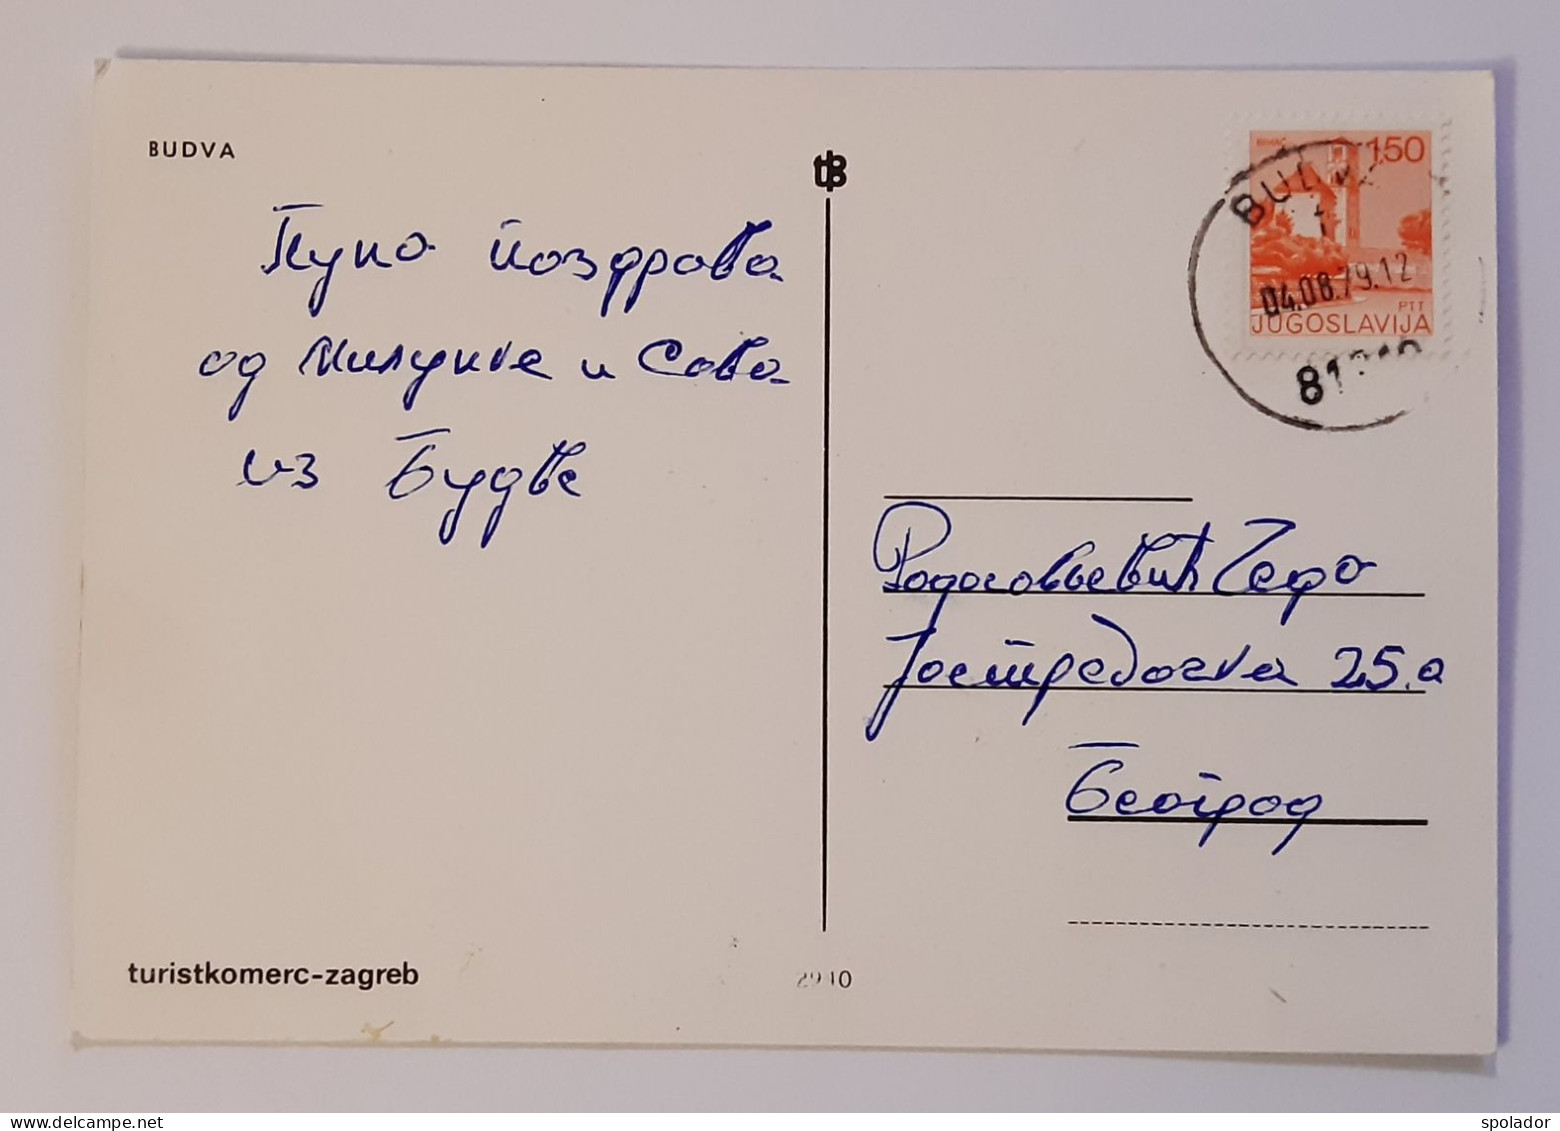 BUDVA-Ex-Yugoslavia-Vintage Panorama Postcard-Montenegro-Crna Gora-used With Stamp 1979 - Yougoslavie